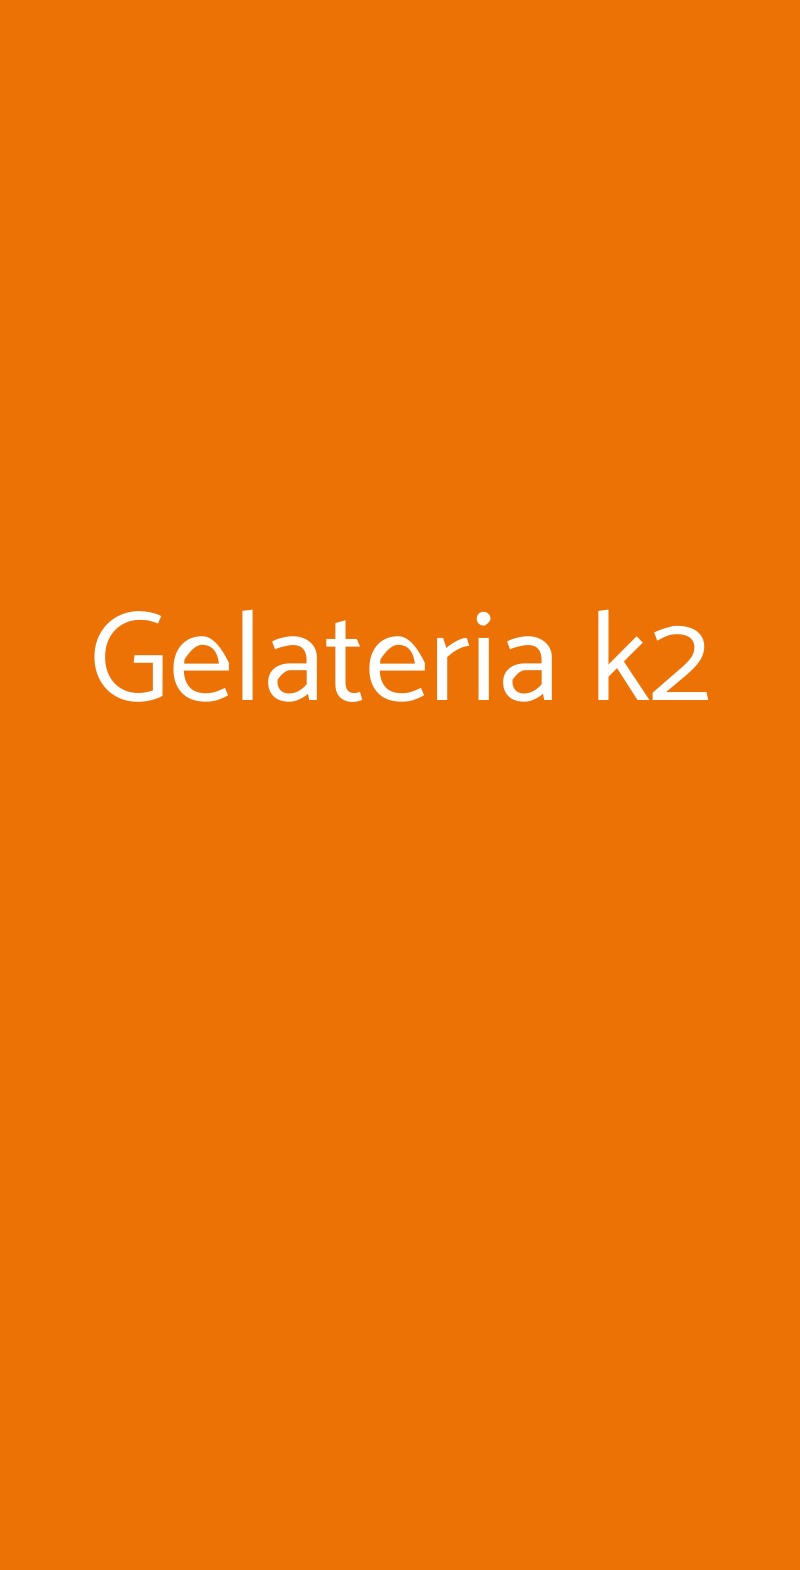 Gelateria k2 Modena menù 1 pagina